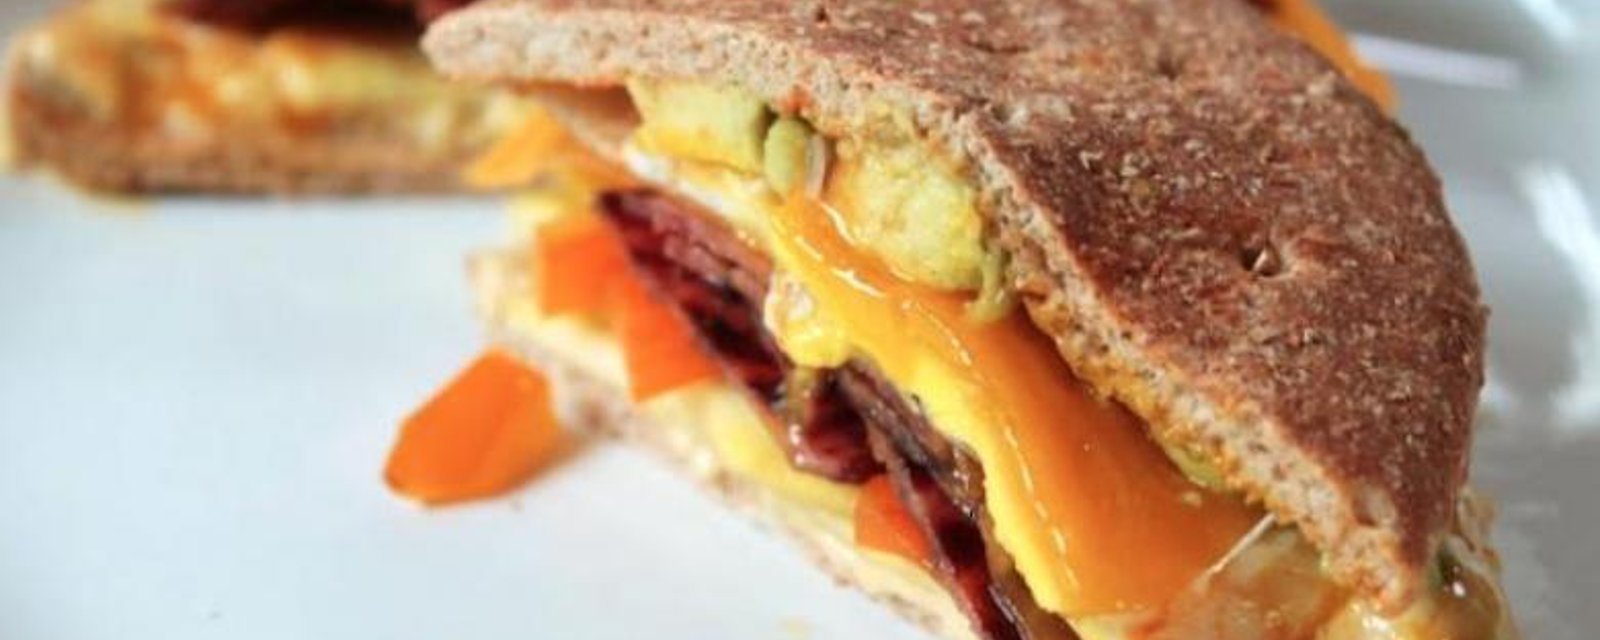 La recette parfaite pour une déjeuner santé: Le sandwich déjeuner faible en calories!